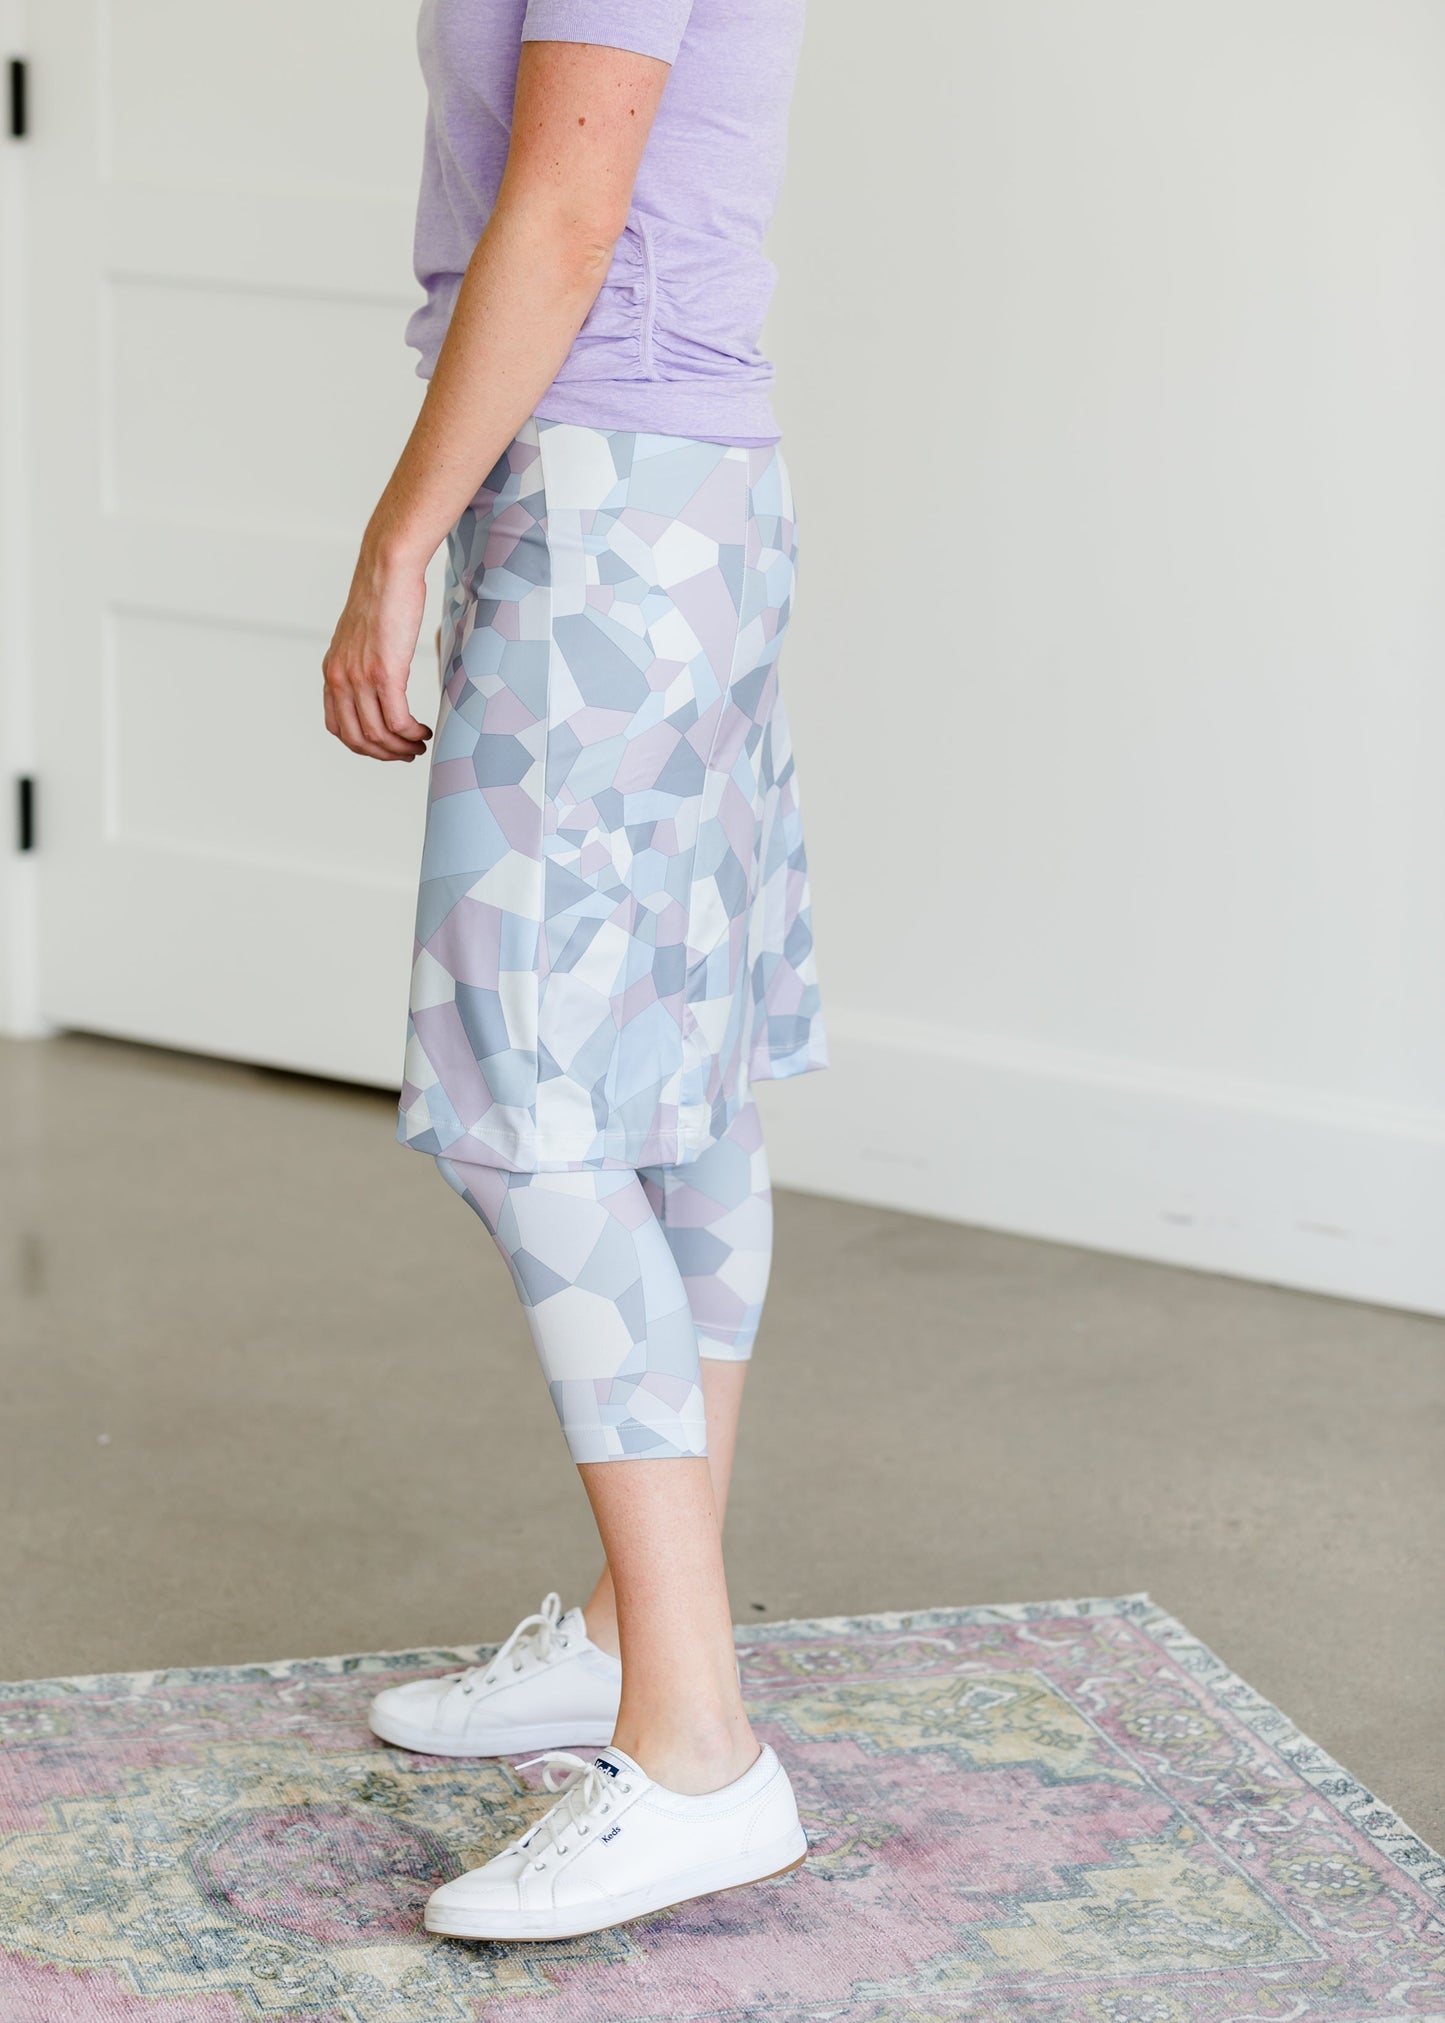 Snoga FIT Shattered Print Sport Skirt - FINAL SALE Activewear